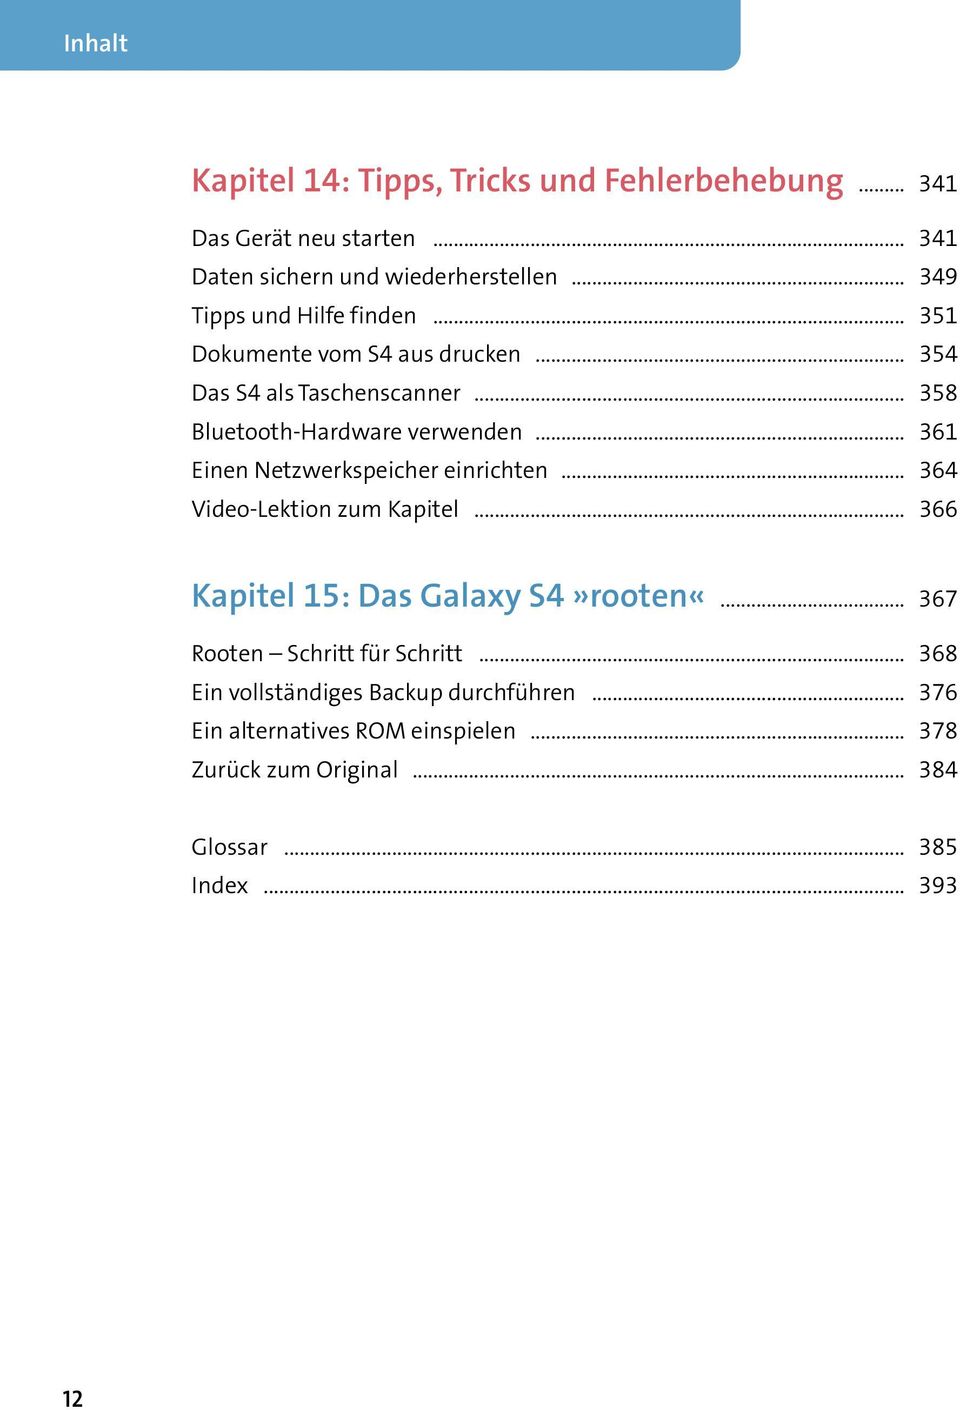 .. 361 Einen Netzwerkspeicher einrichten... 364 Video-Lektion zum Kapitel... 366 Kapitel 15: Das Galaxy S4»rooten«.